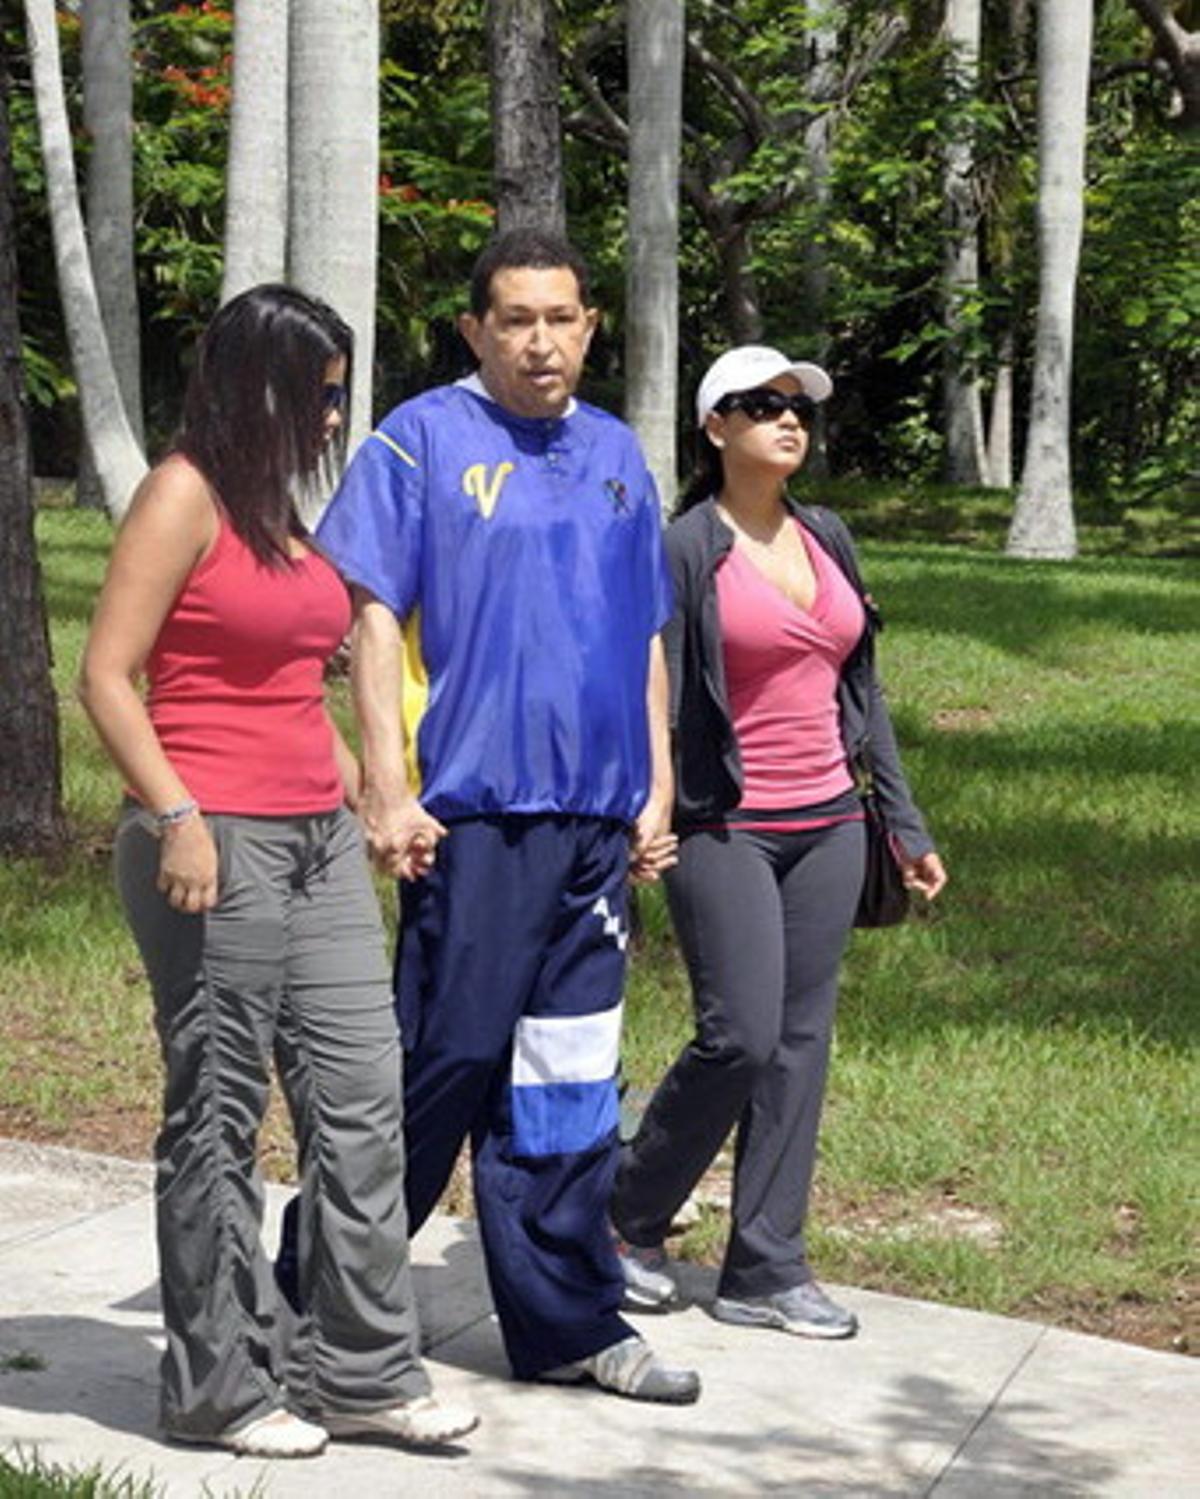 Hugo Chávez, camina junto a sus hijas Maria Gabriela y Rosa Virginia, en La Habana, como parte de la rutina indicada por los médicos para su recuperación.